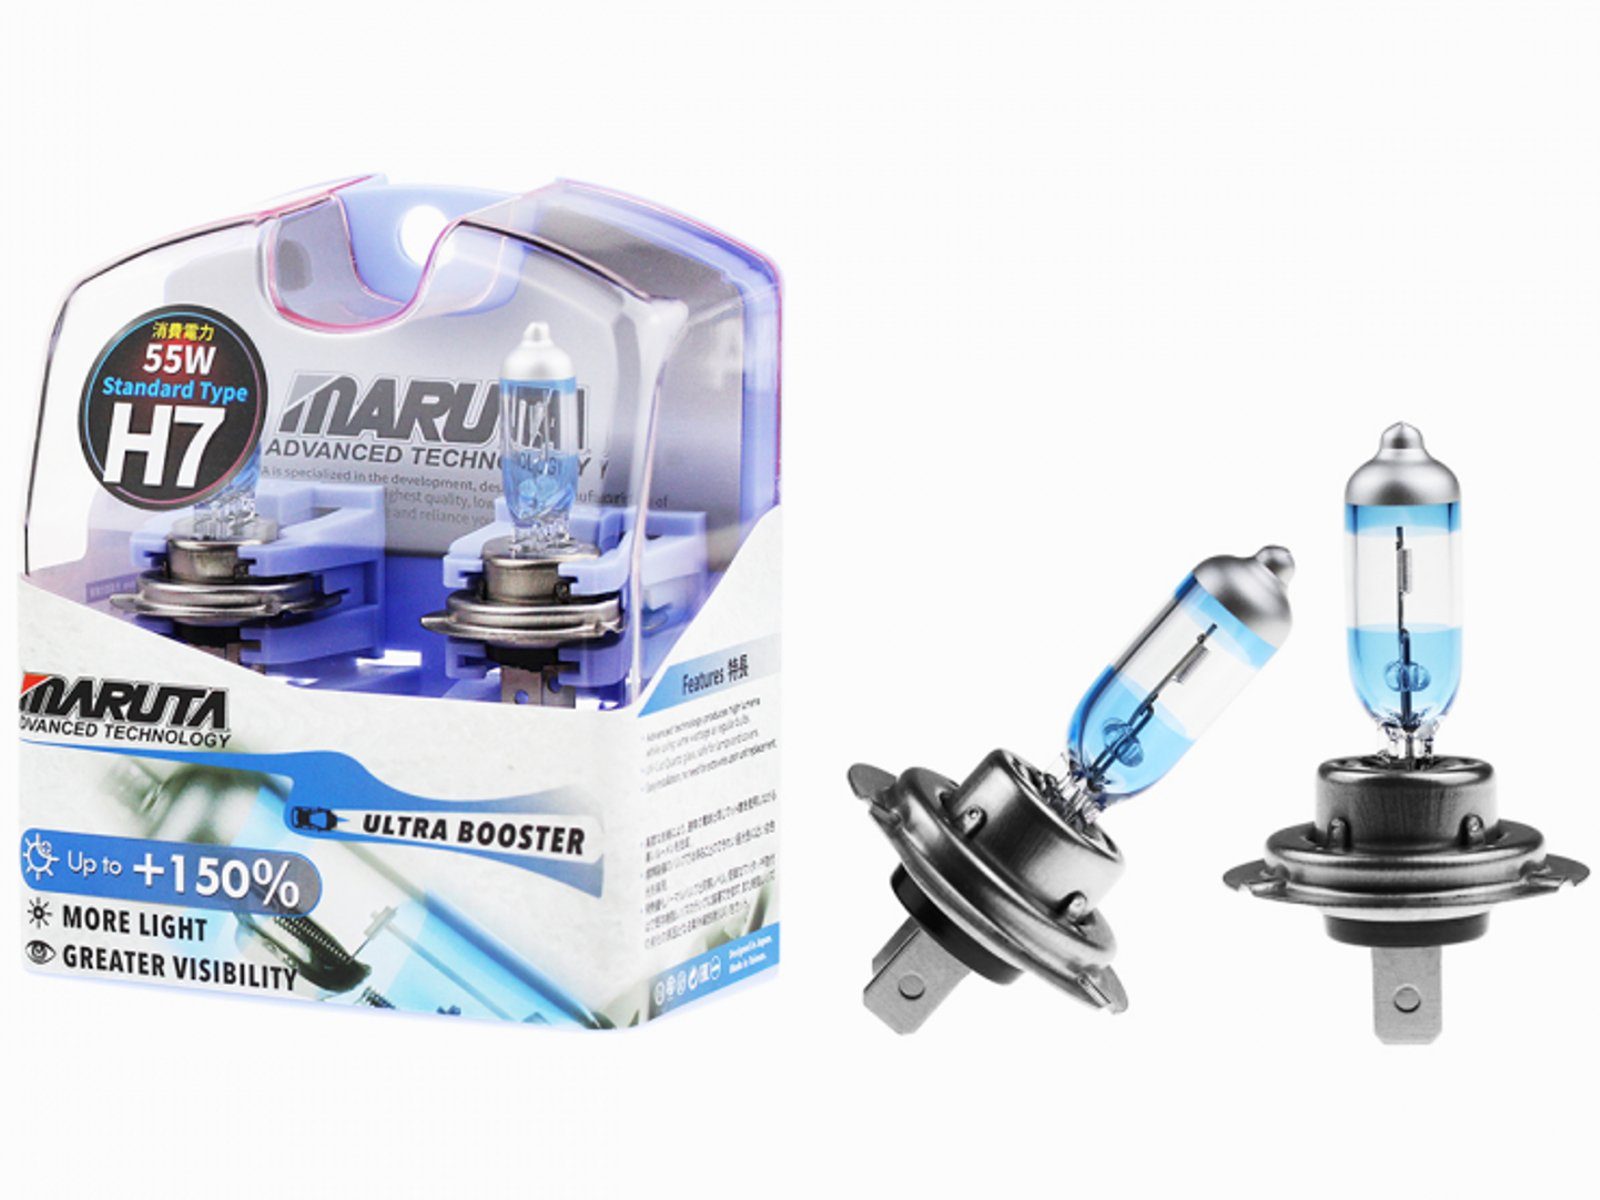 MARUTA SUPER WHITE H7 12V 55W Halogenlampe für Scheinwerfer, Abblendlicht,  5500K Xenon-Effekt, langlebige Xenon-Gas Birne mit hochwertigem Quarzglas &  [dse.one] – dse.one DE